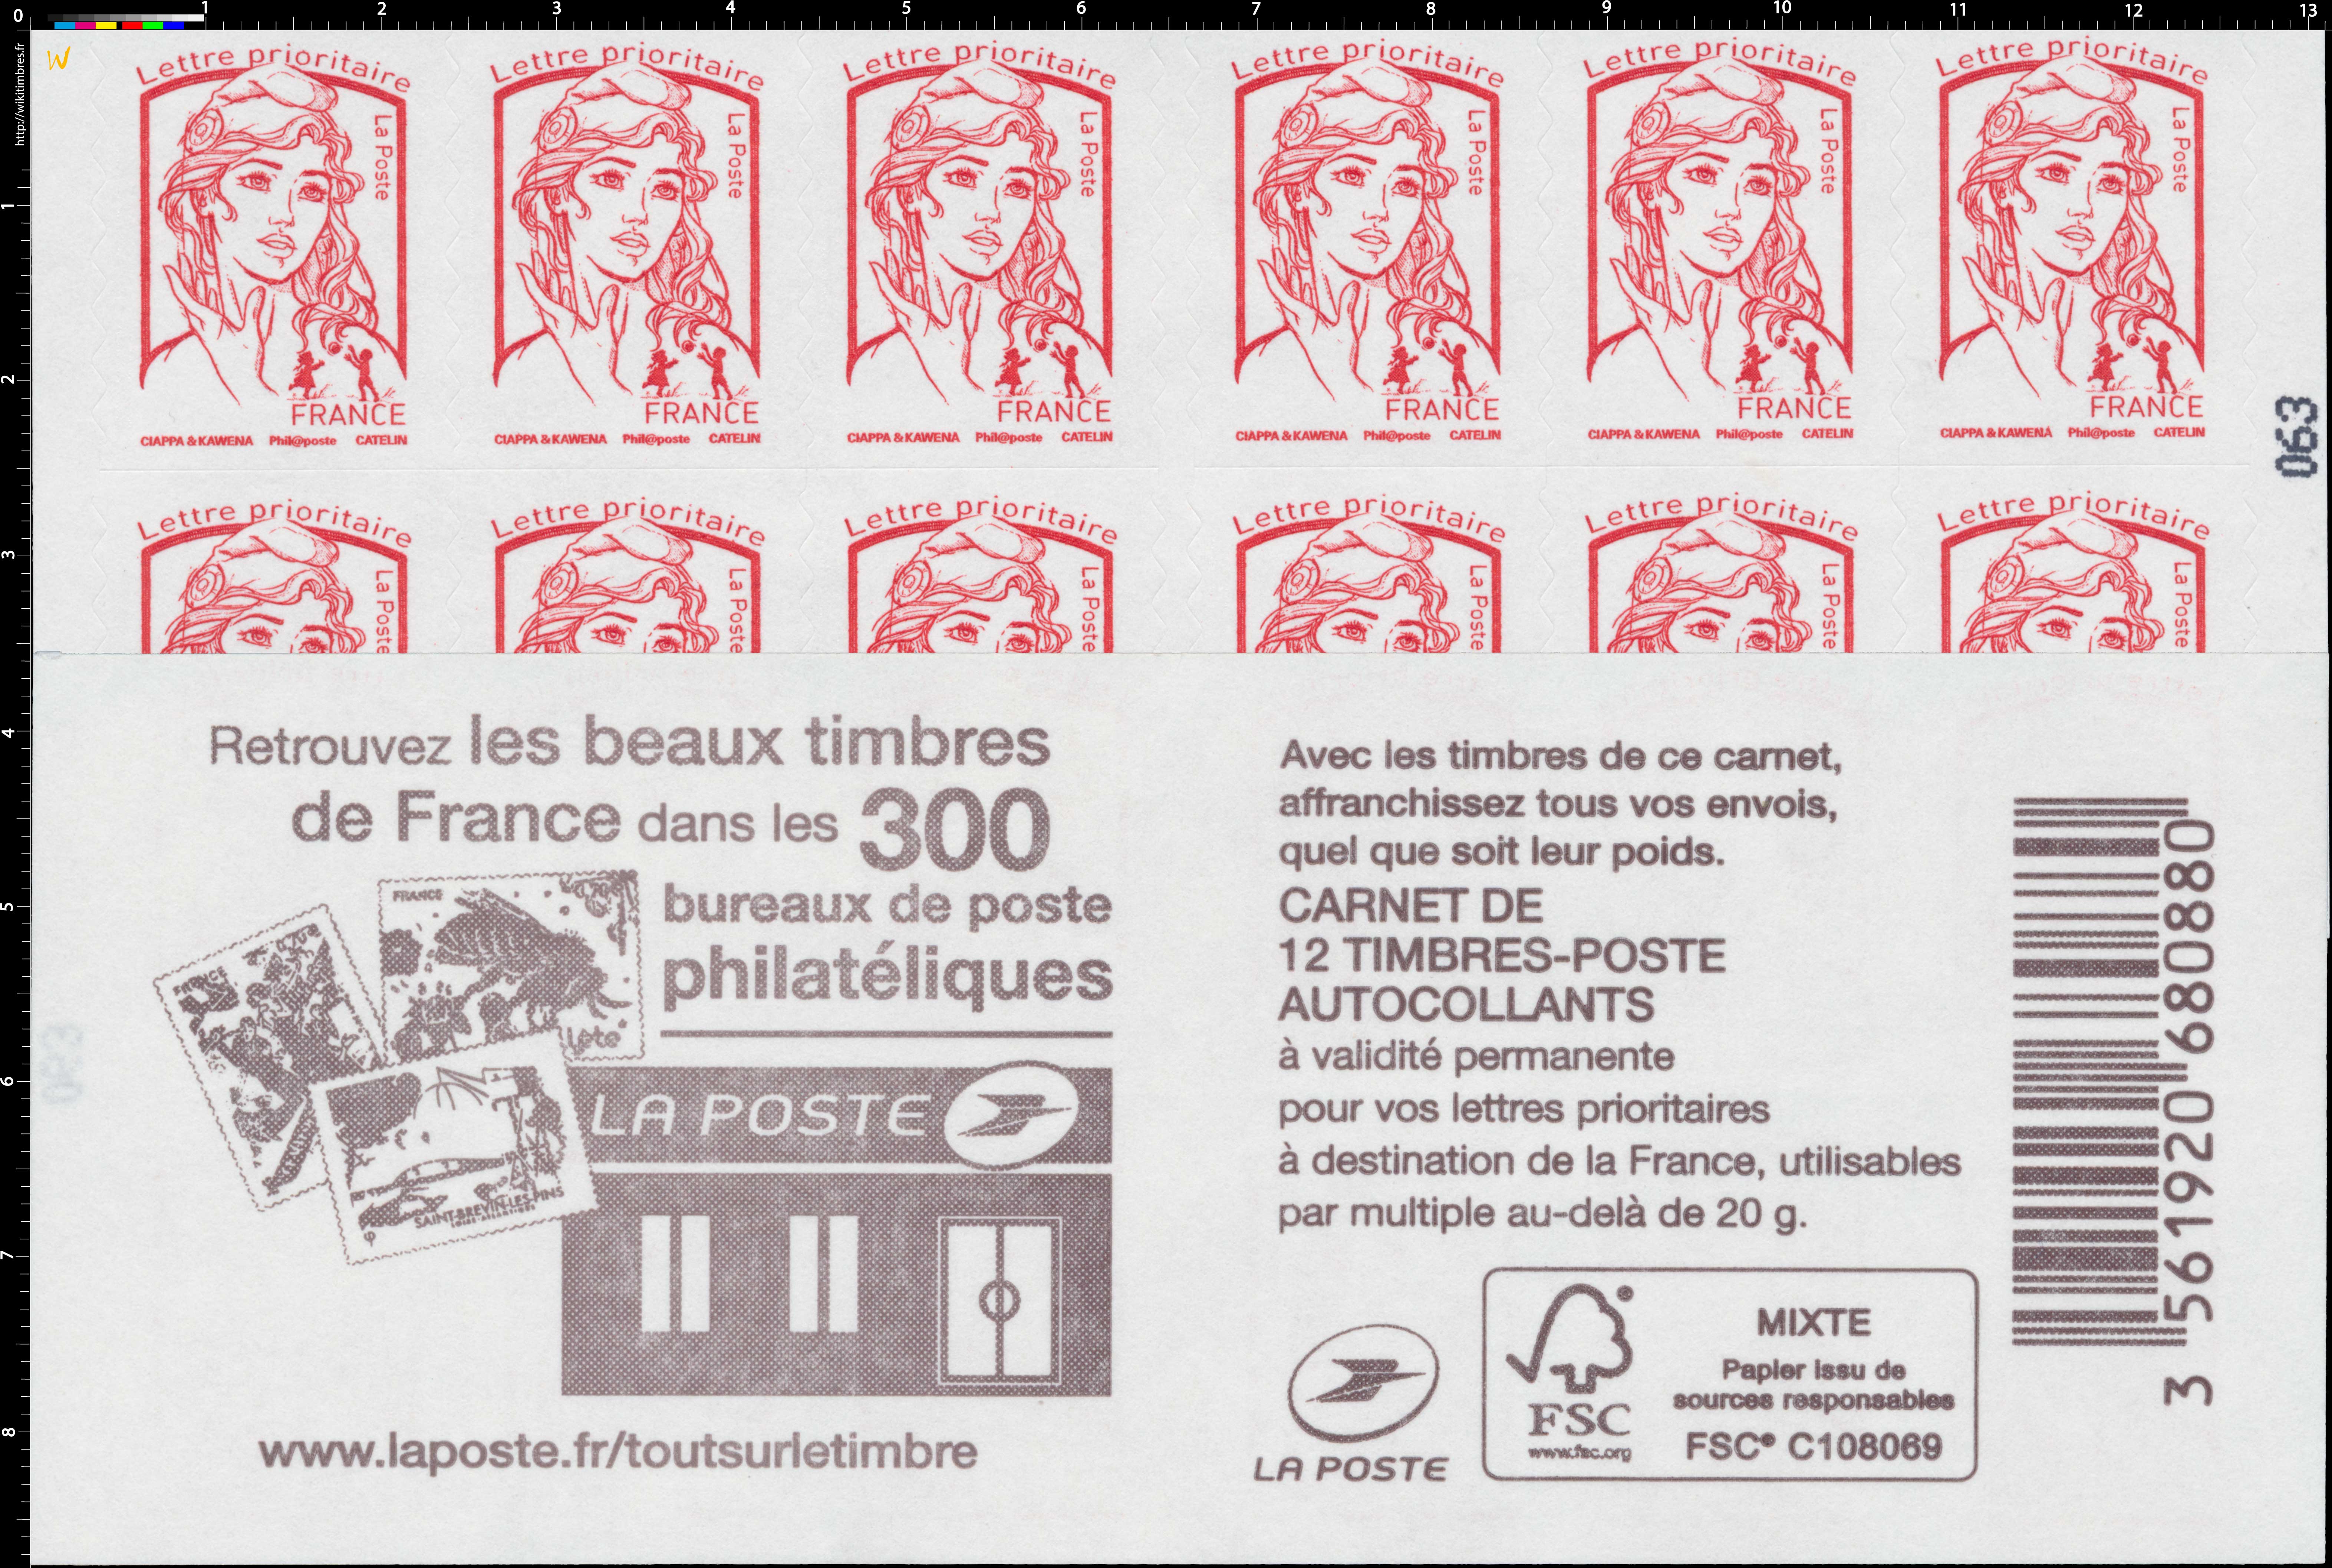 2017 Retrouvez les beaux timbres de France dans les 300 bureaux de poste philatélique